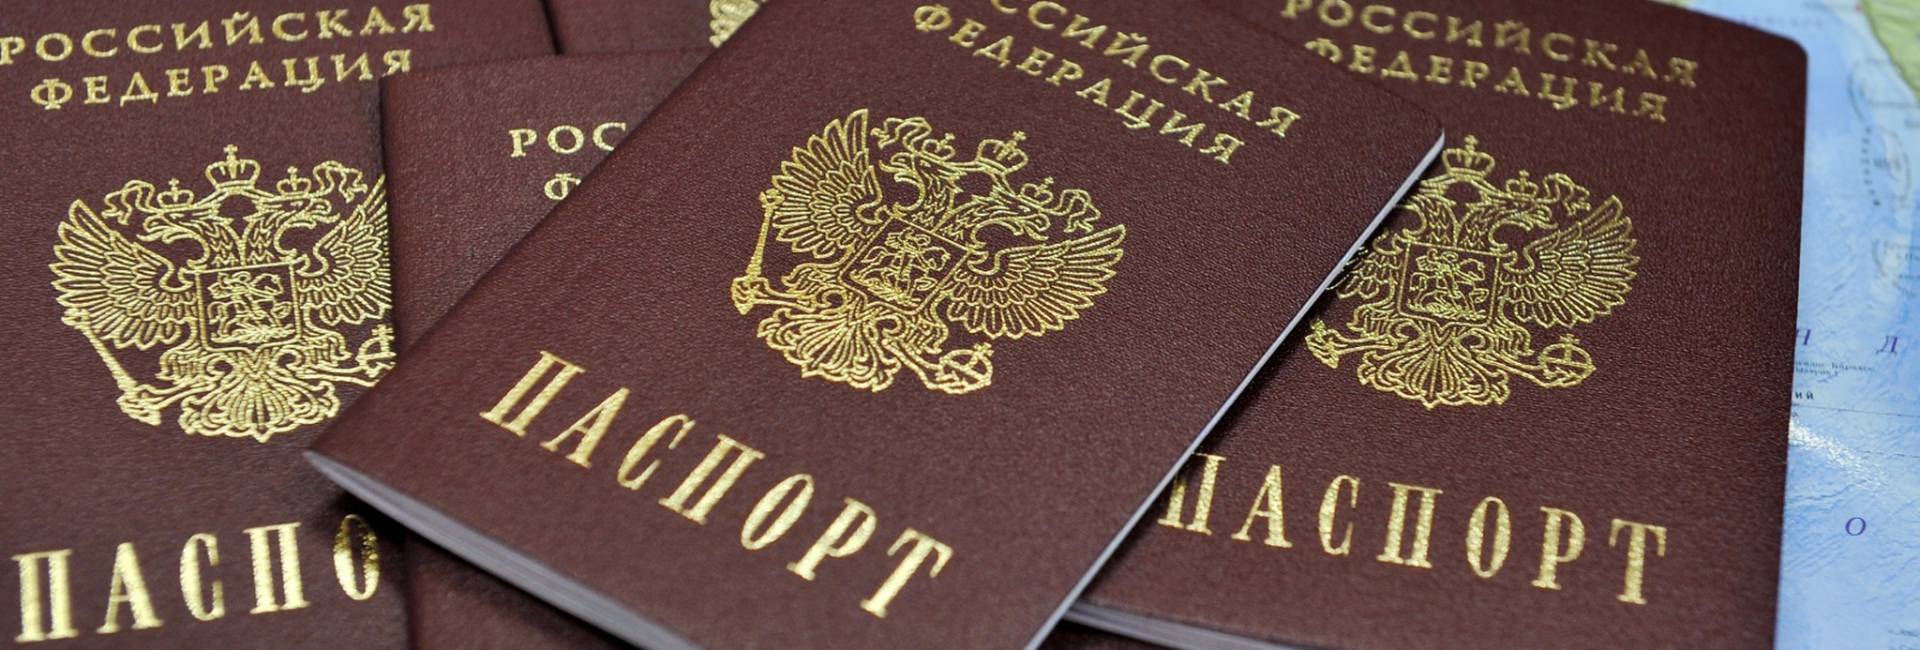 Российский паспорт может стать гарантией